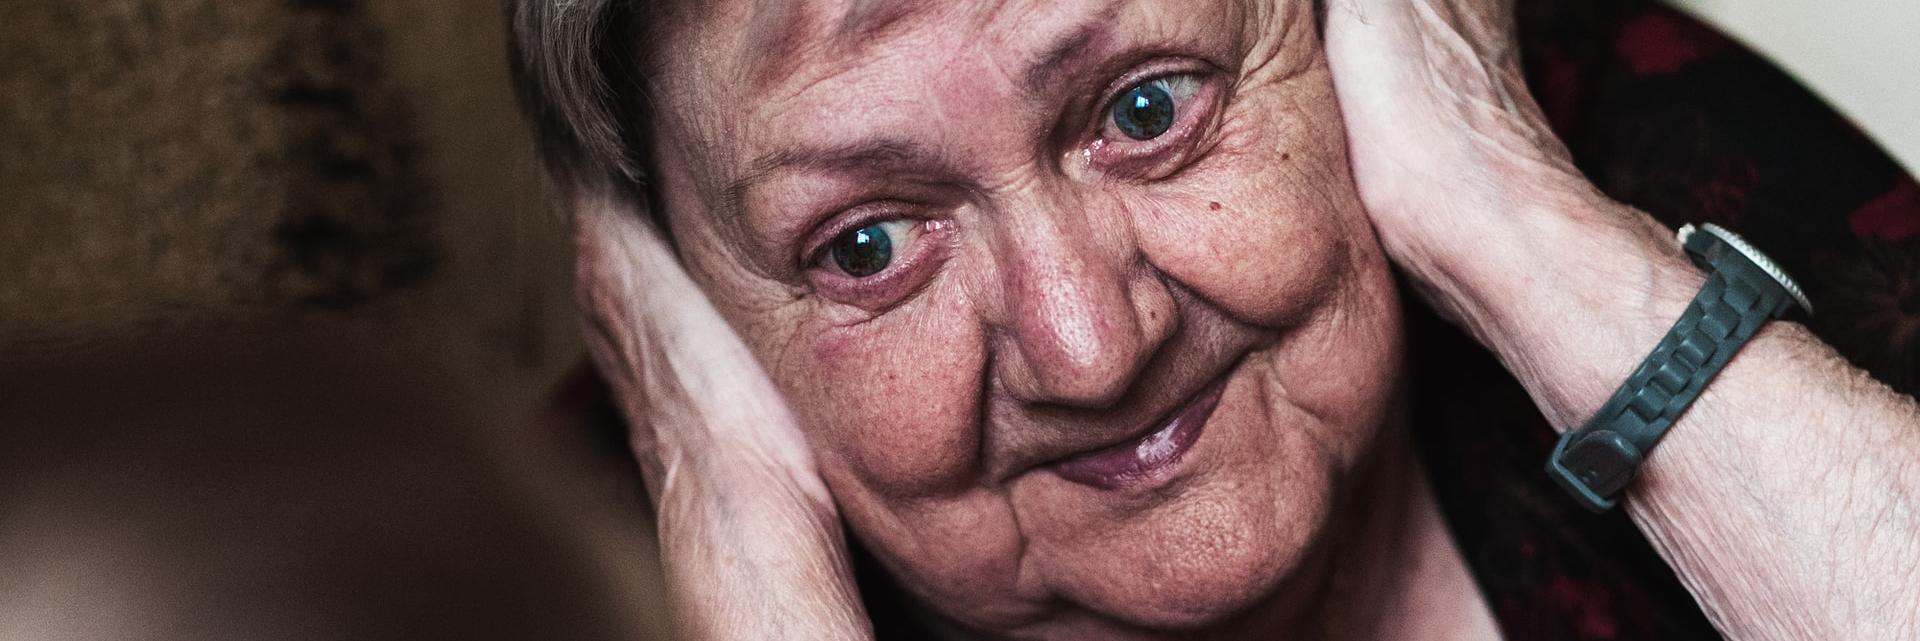 Hilde Pütz feiert ihr 90jähriges